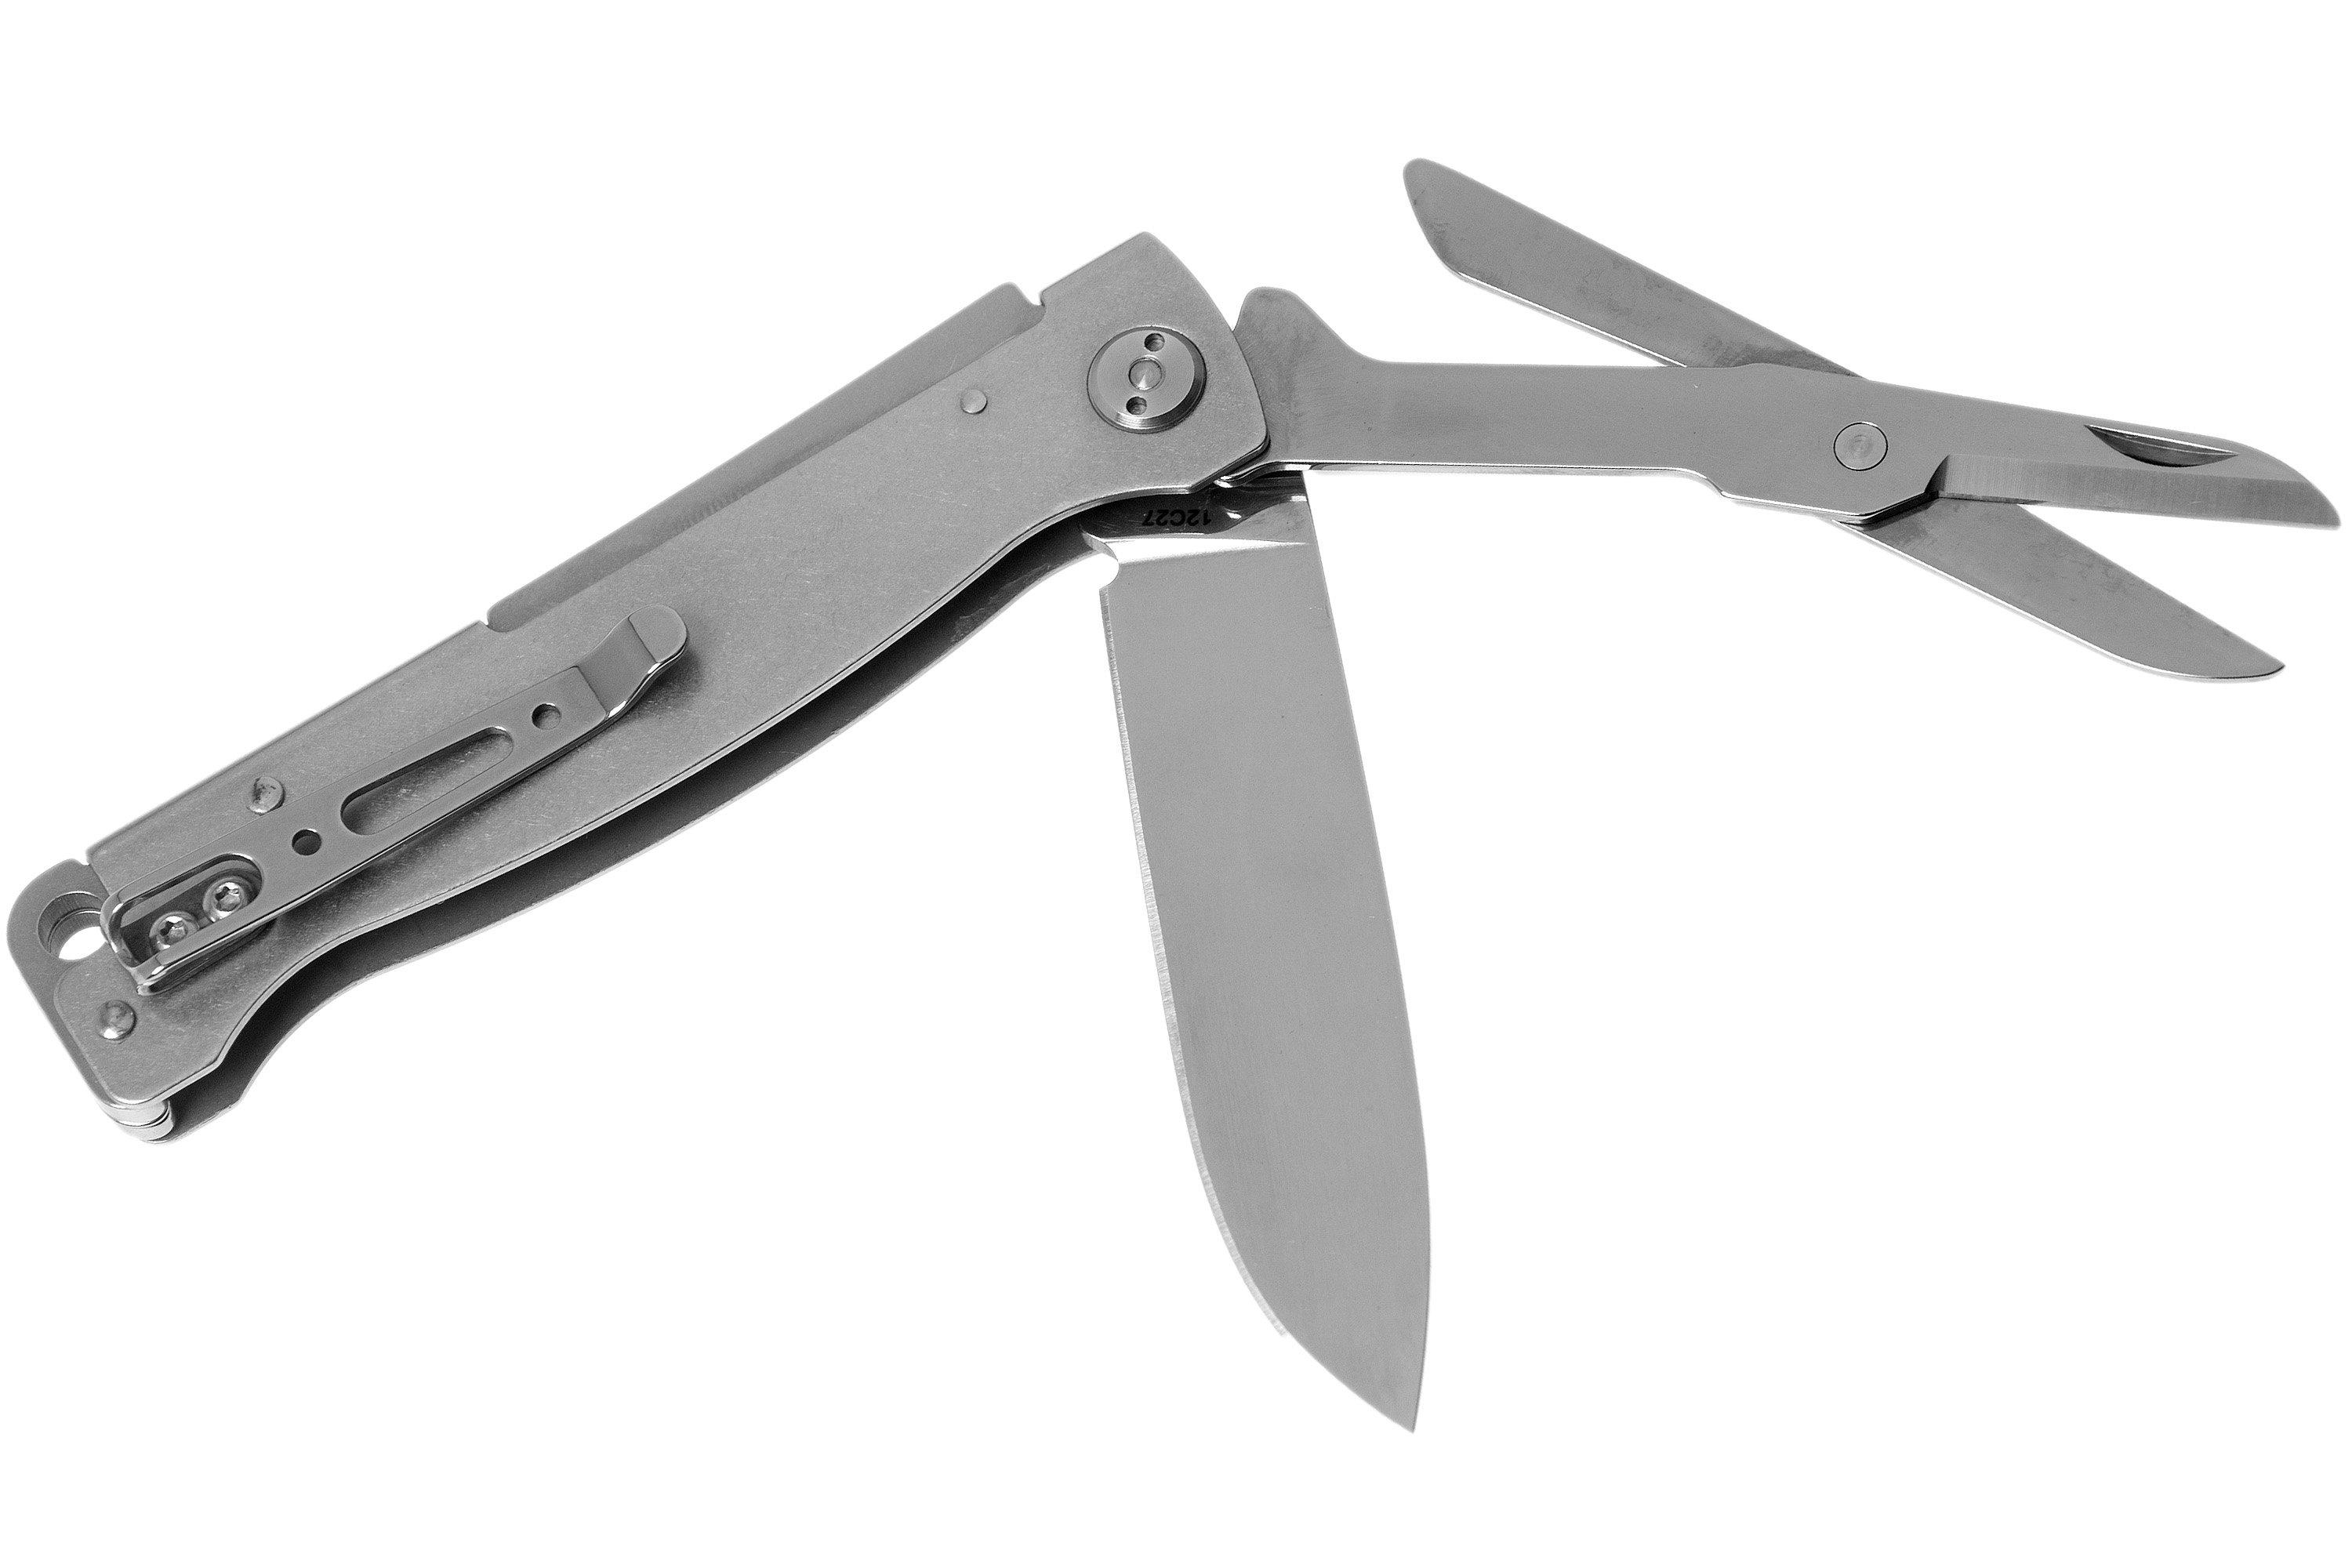 Böker Plus Atlas Multi Gen 2 01BO857 pocket knife